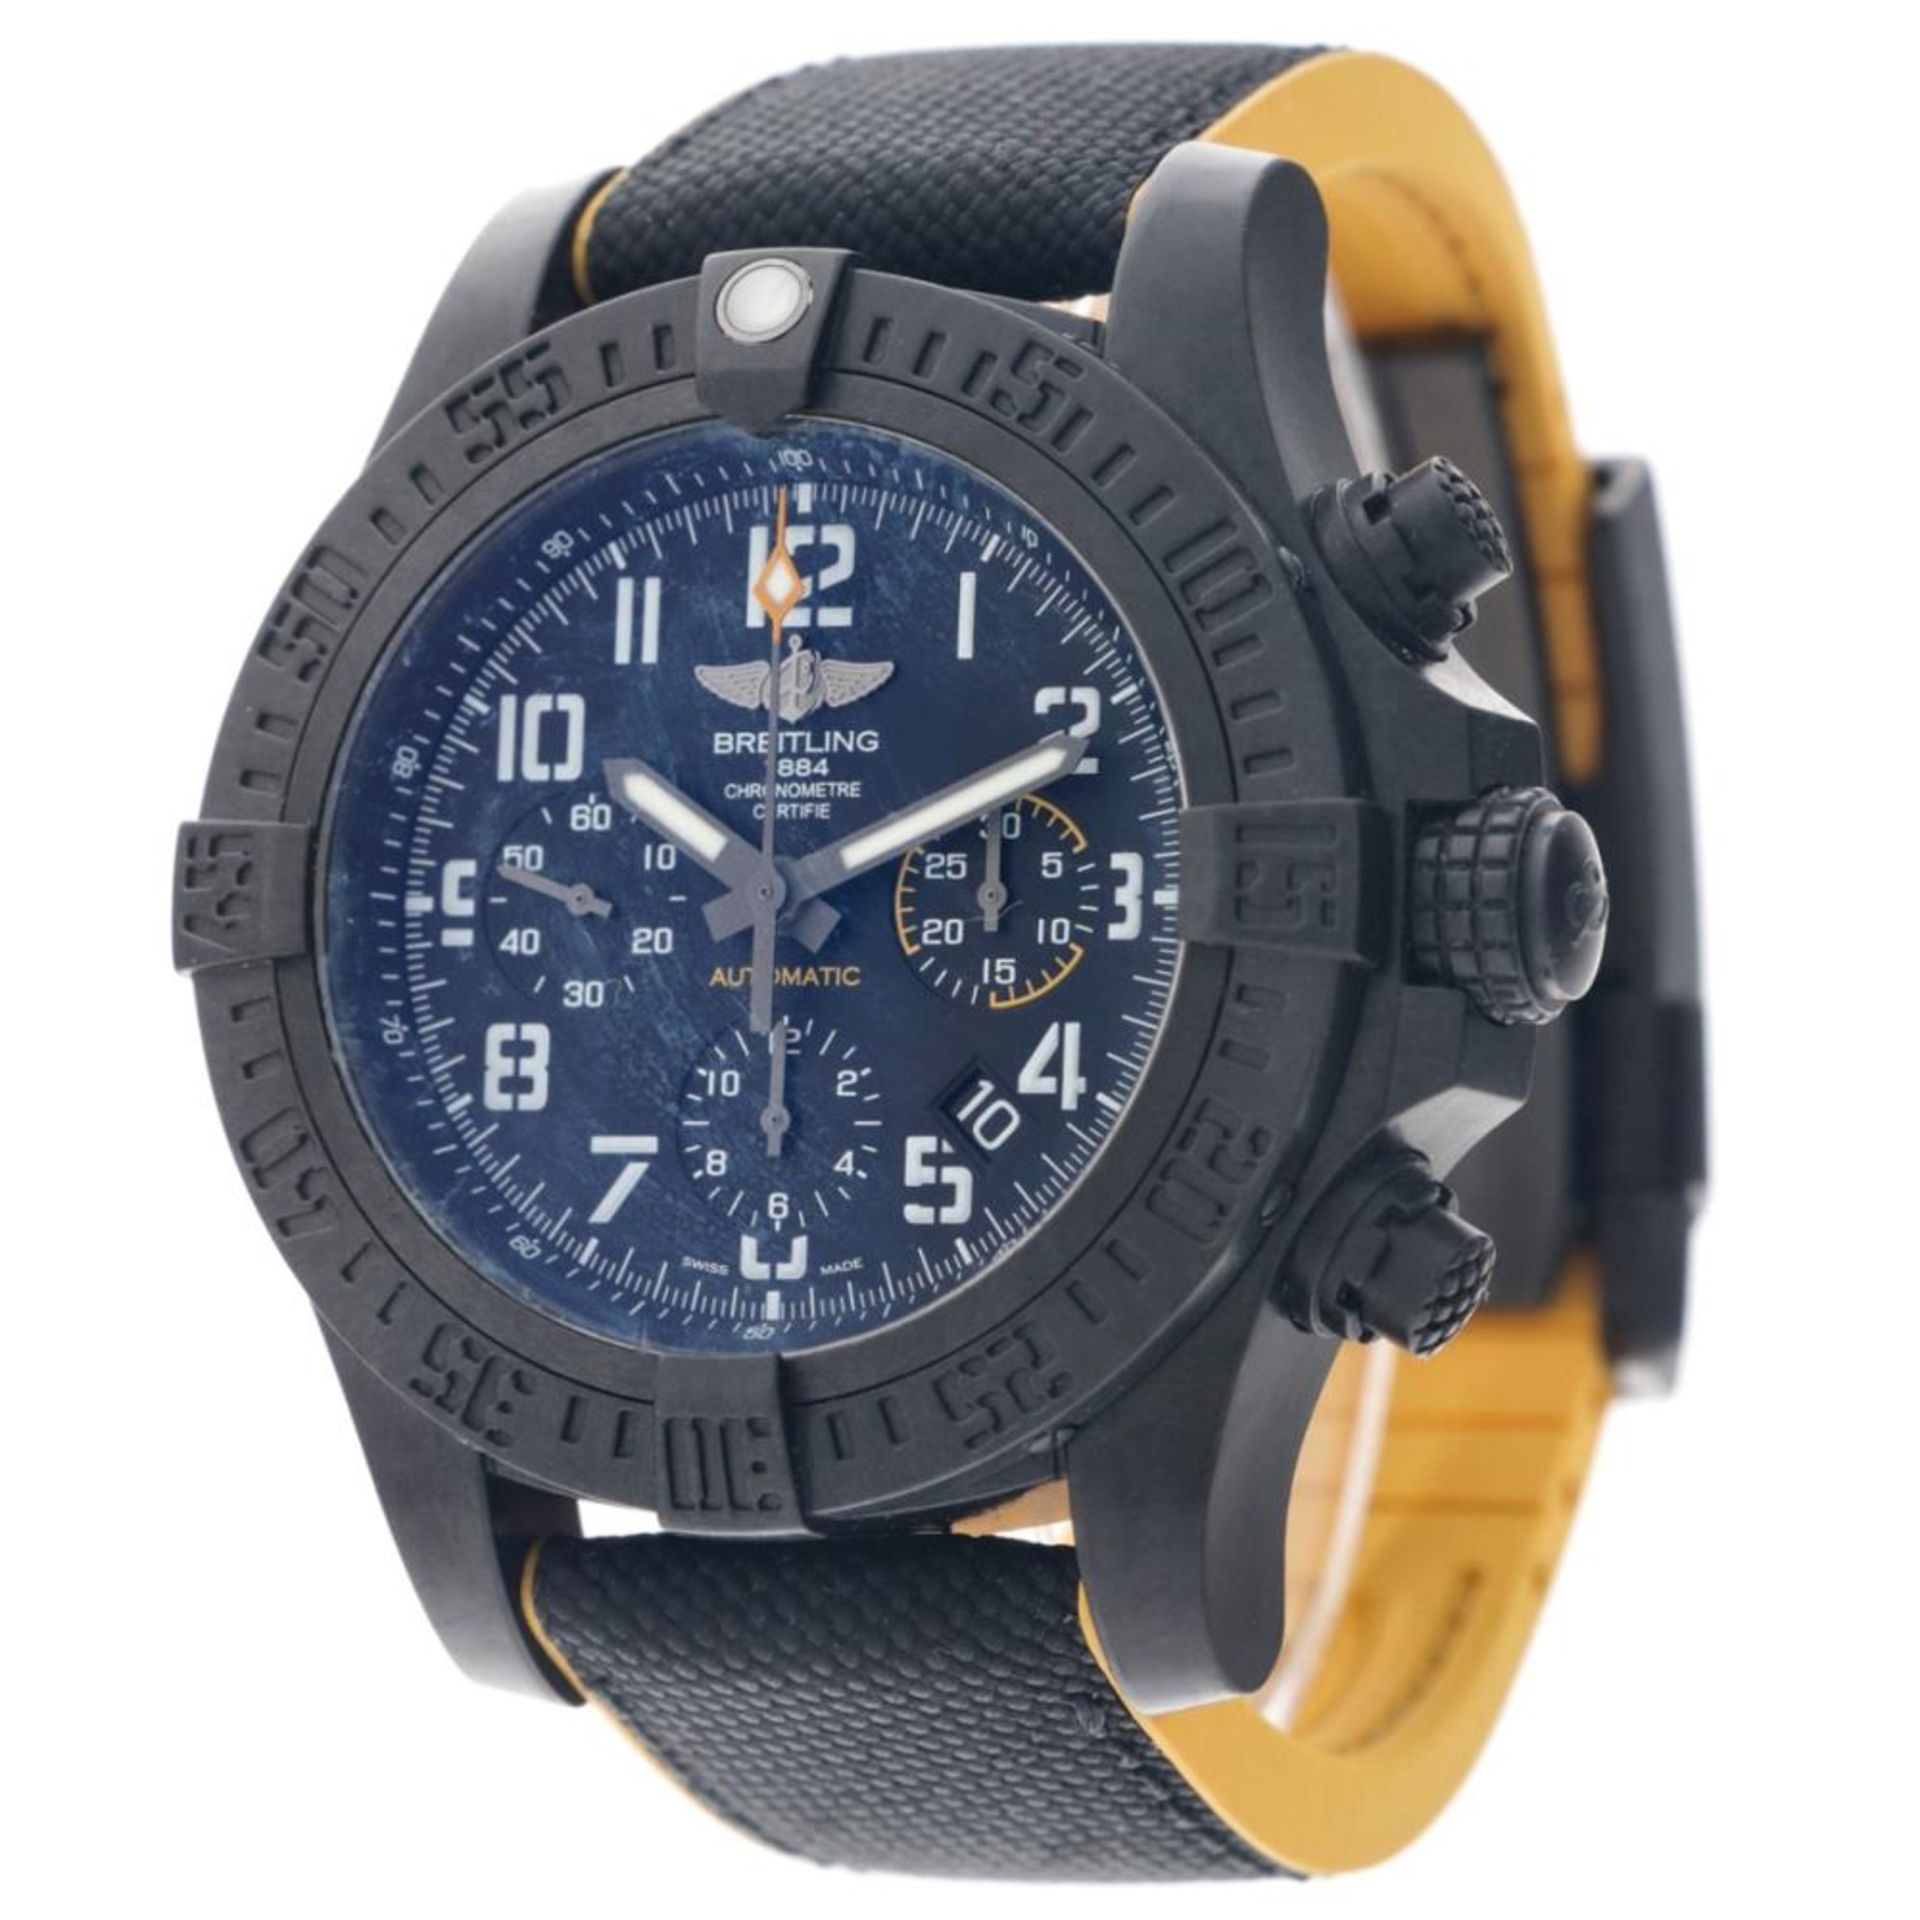 Breitling Avenger Hurricane XB0180E4 - Men's watch - 2019. - Image 3 of 12